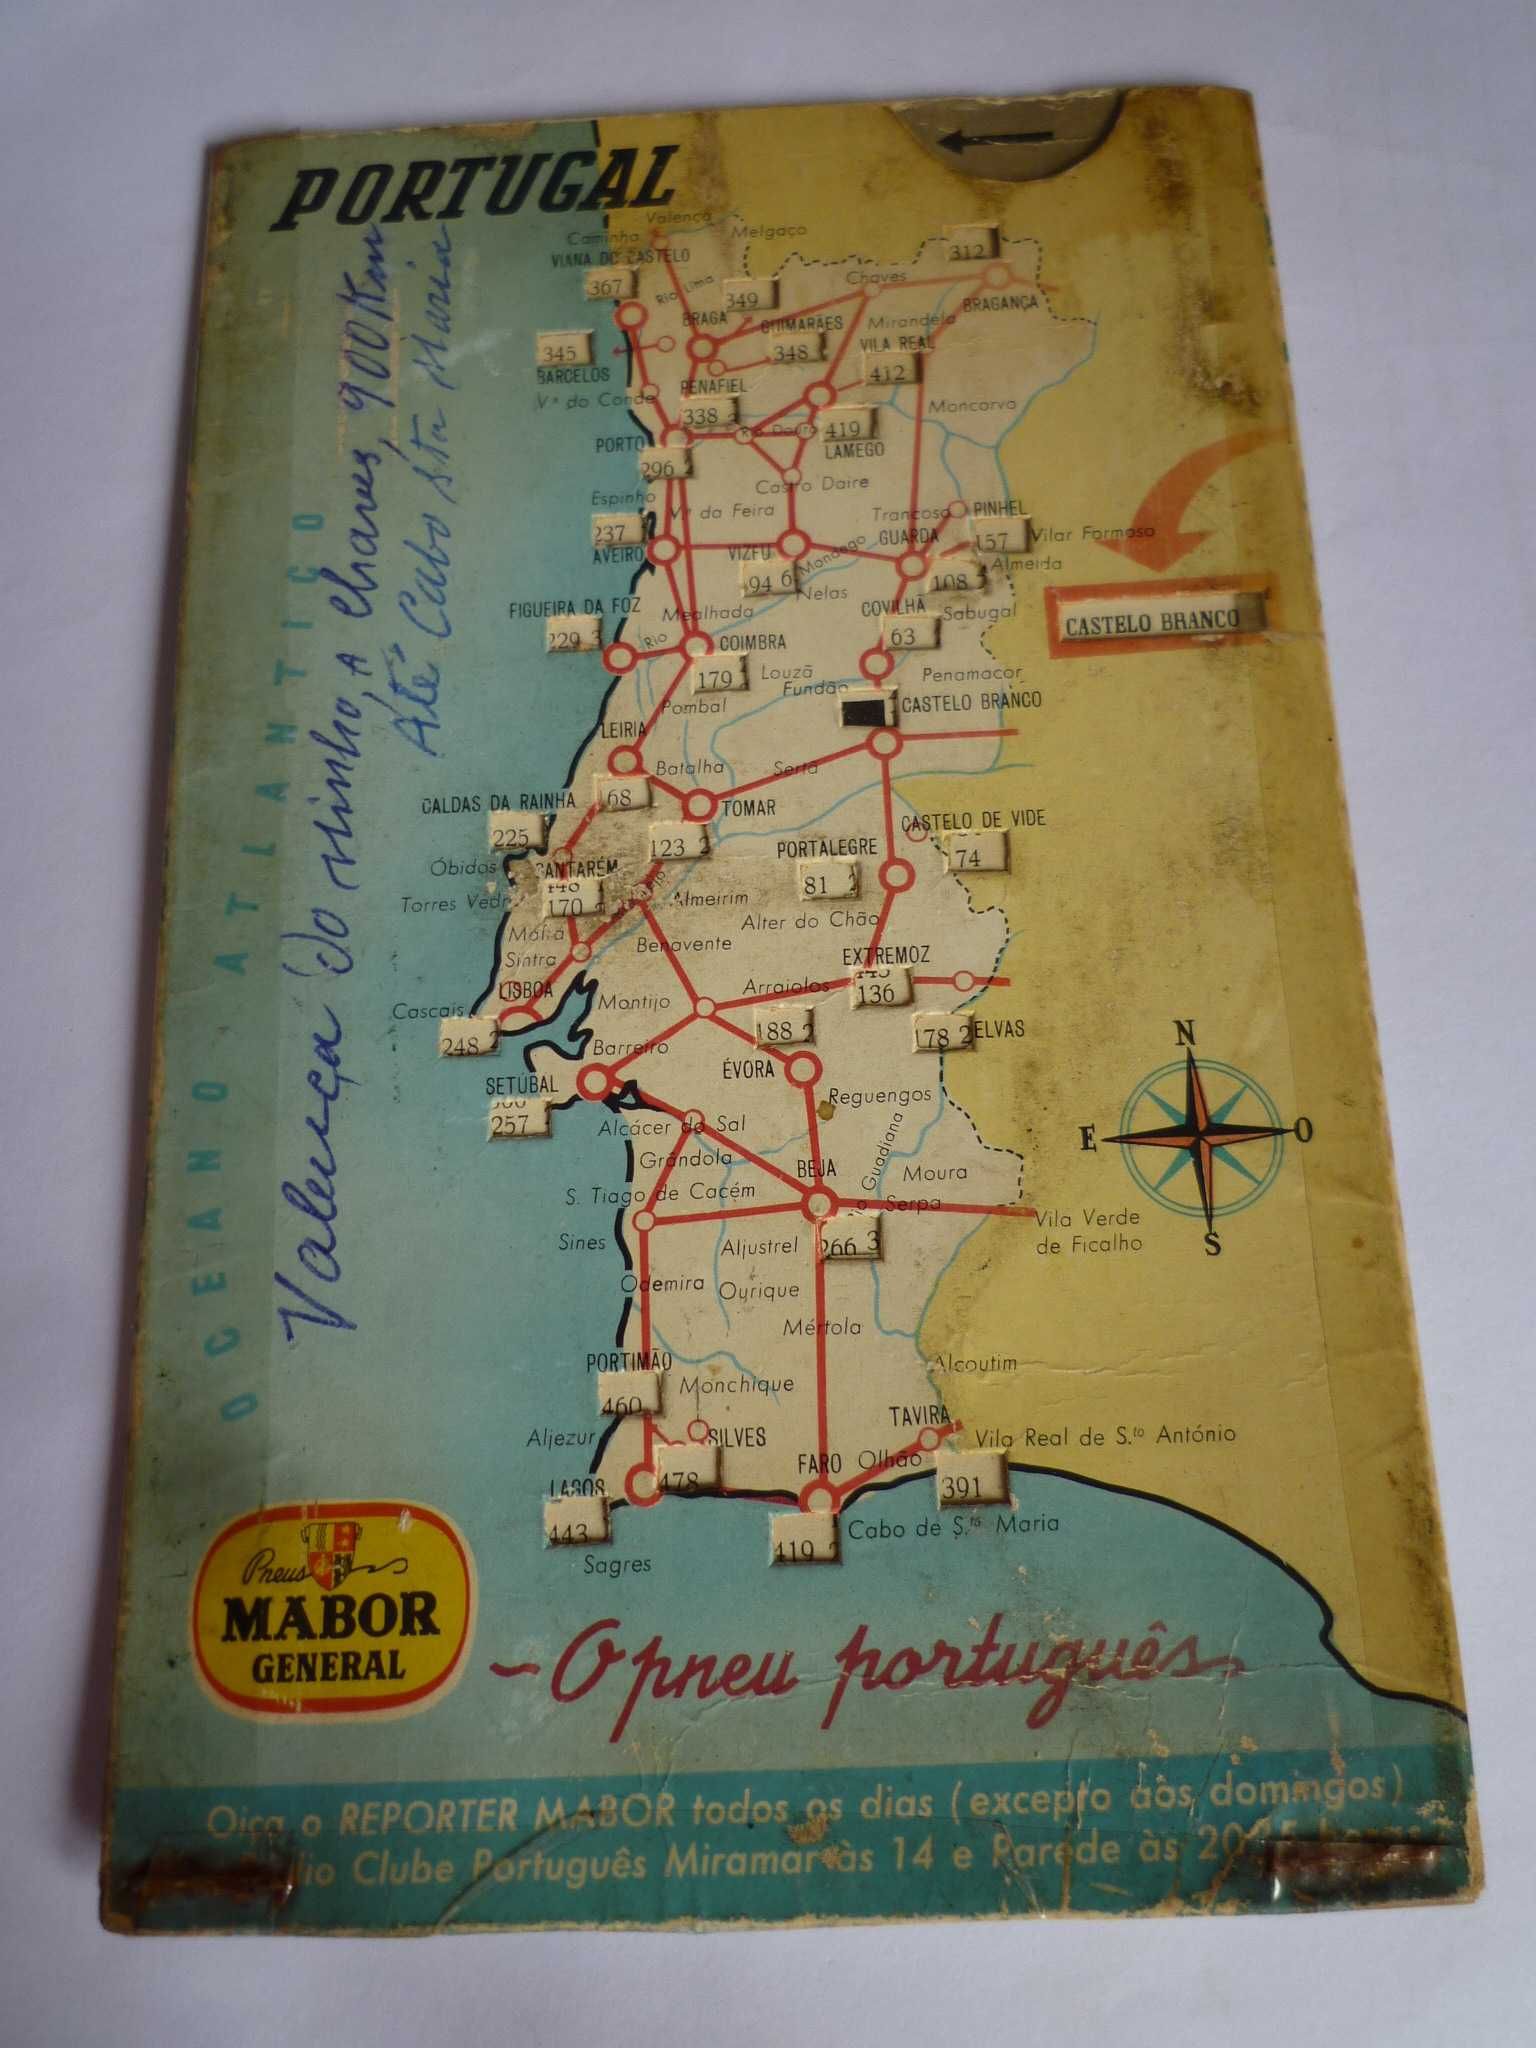 Mapa de portugal com distâncias com Publicidade Mabor Vintage